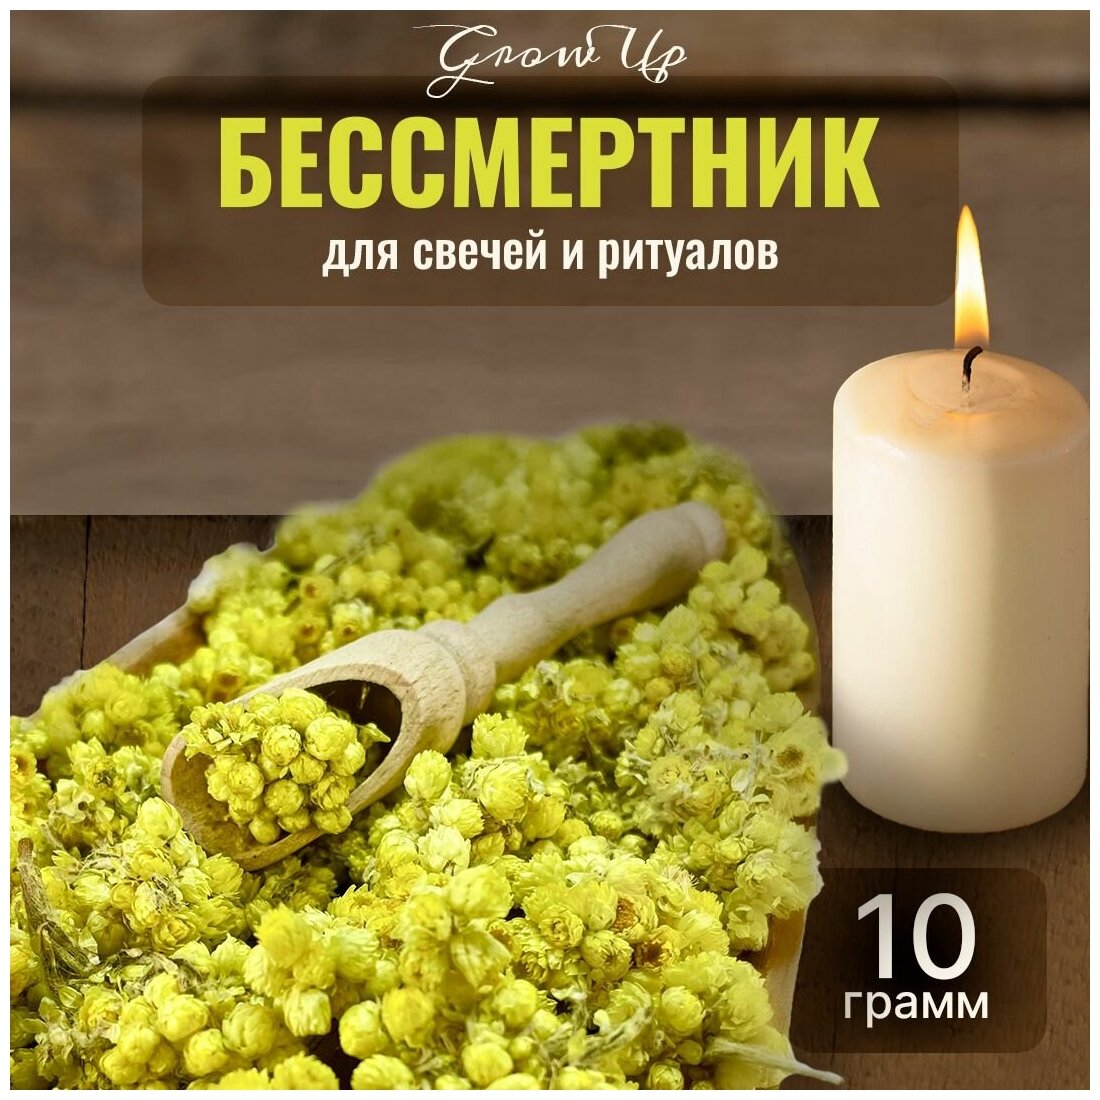 Сухая трава Бессмертник (цветы) для свечей и ритуалов 10 гр